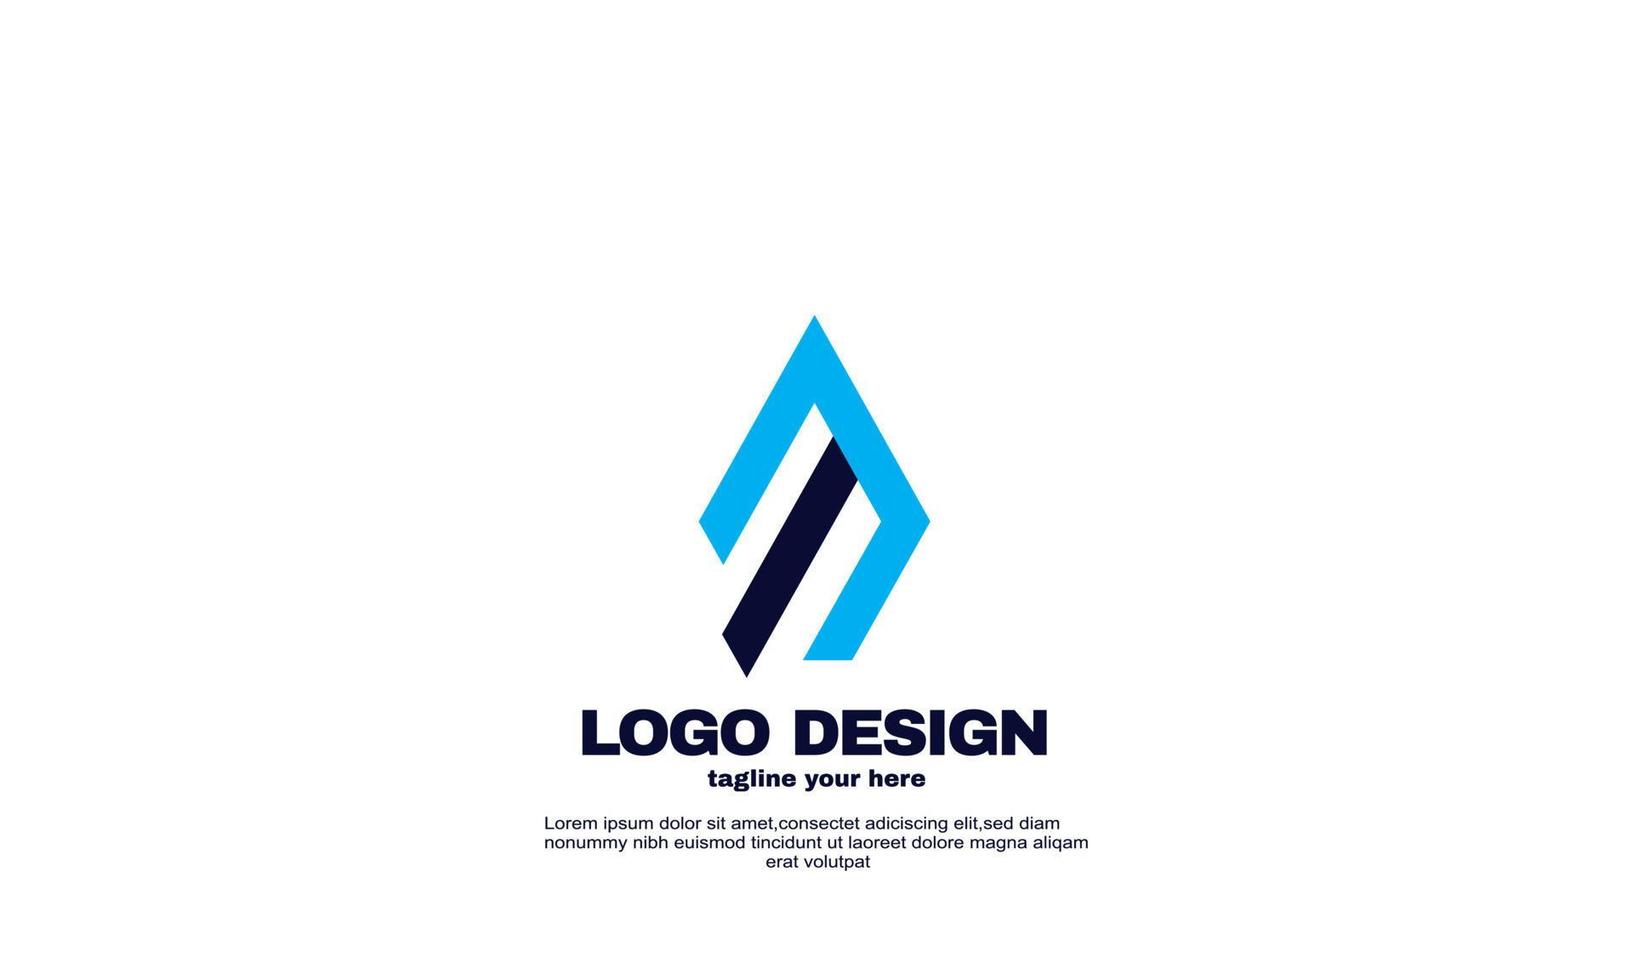 impresionante idea creativa mejor elegante colorido negocio corporativo empresa logotipo diseño vector azul marino color